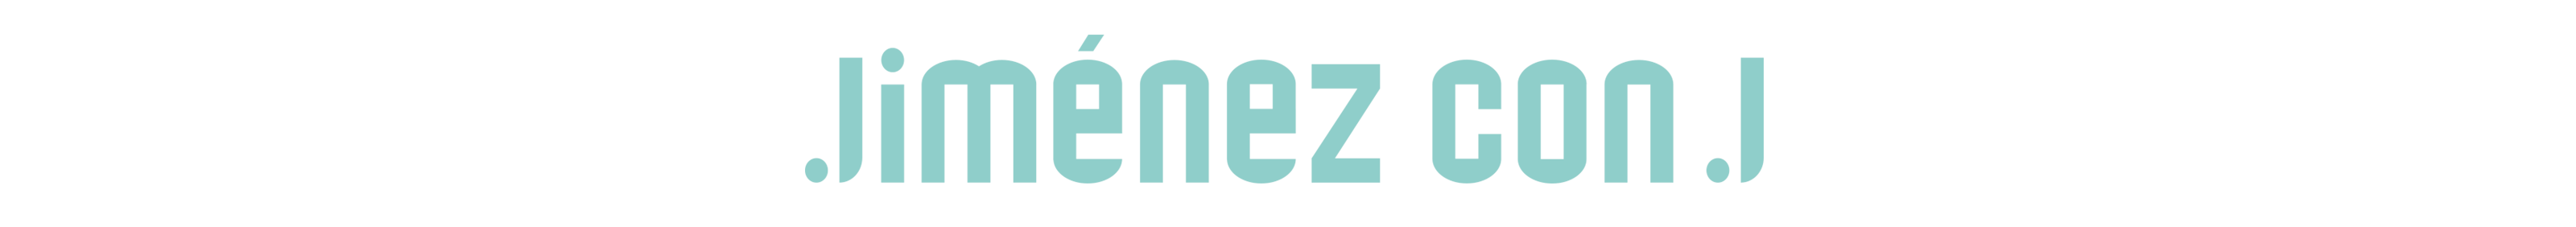 Banner del profilo di Jimenez conj